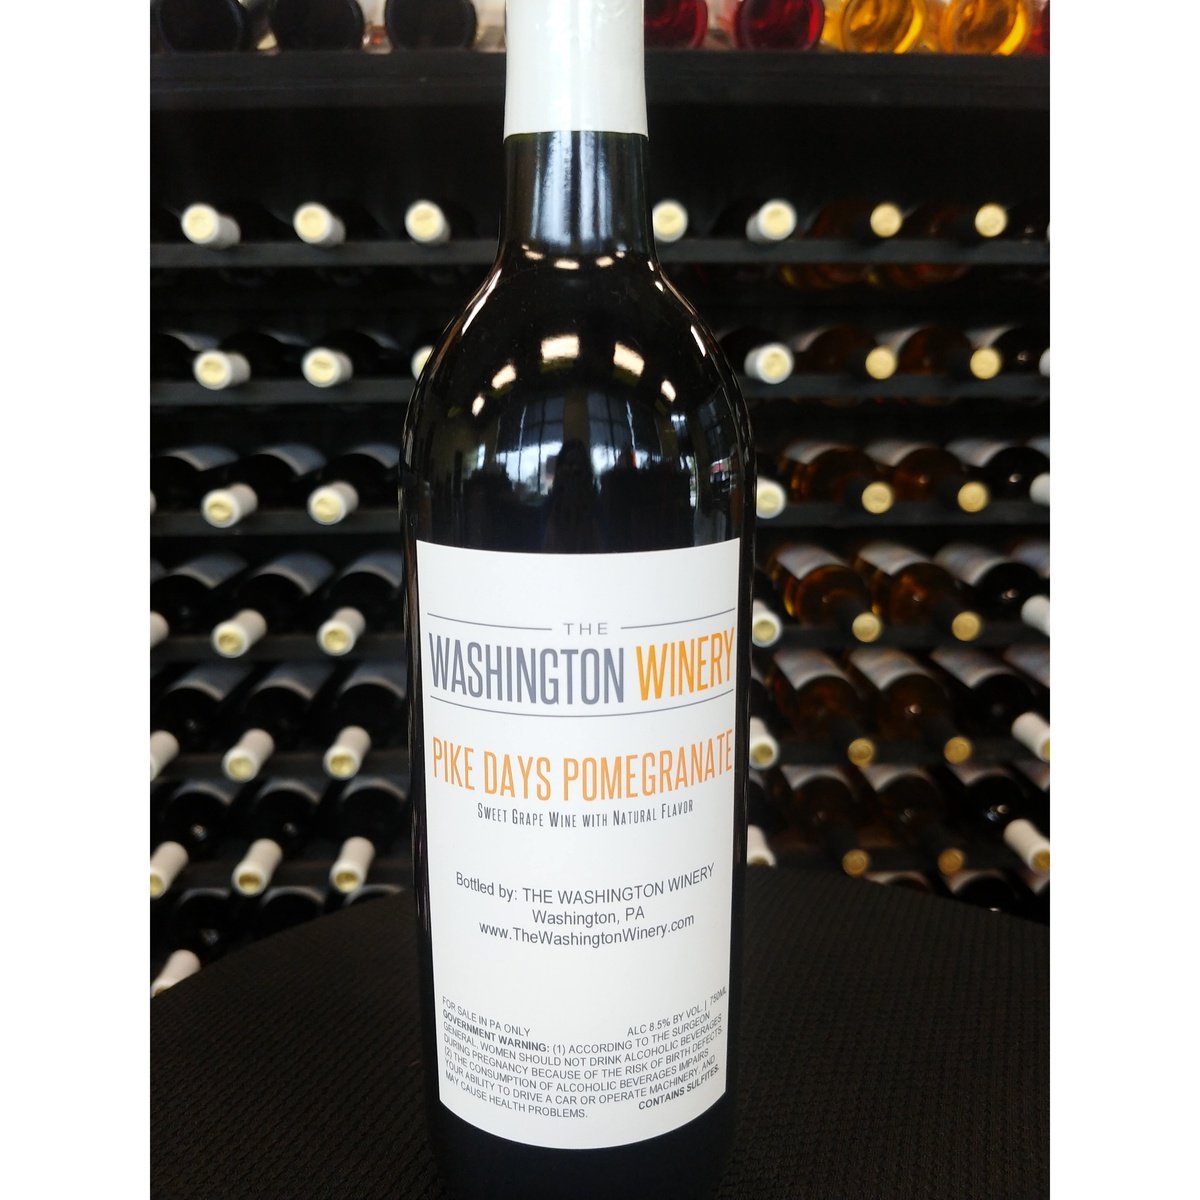 Washington Winery - Pike Days Pomegranite - 750mL Bottle